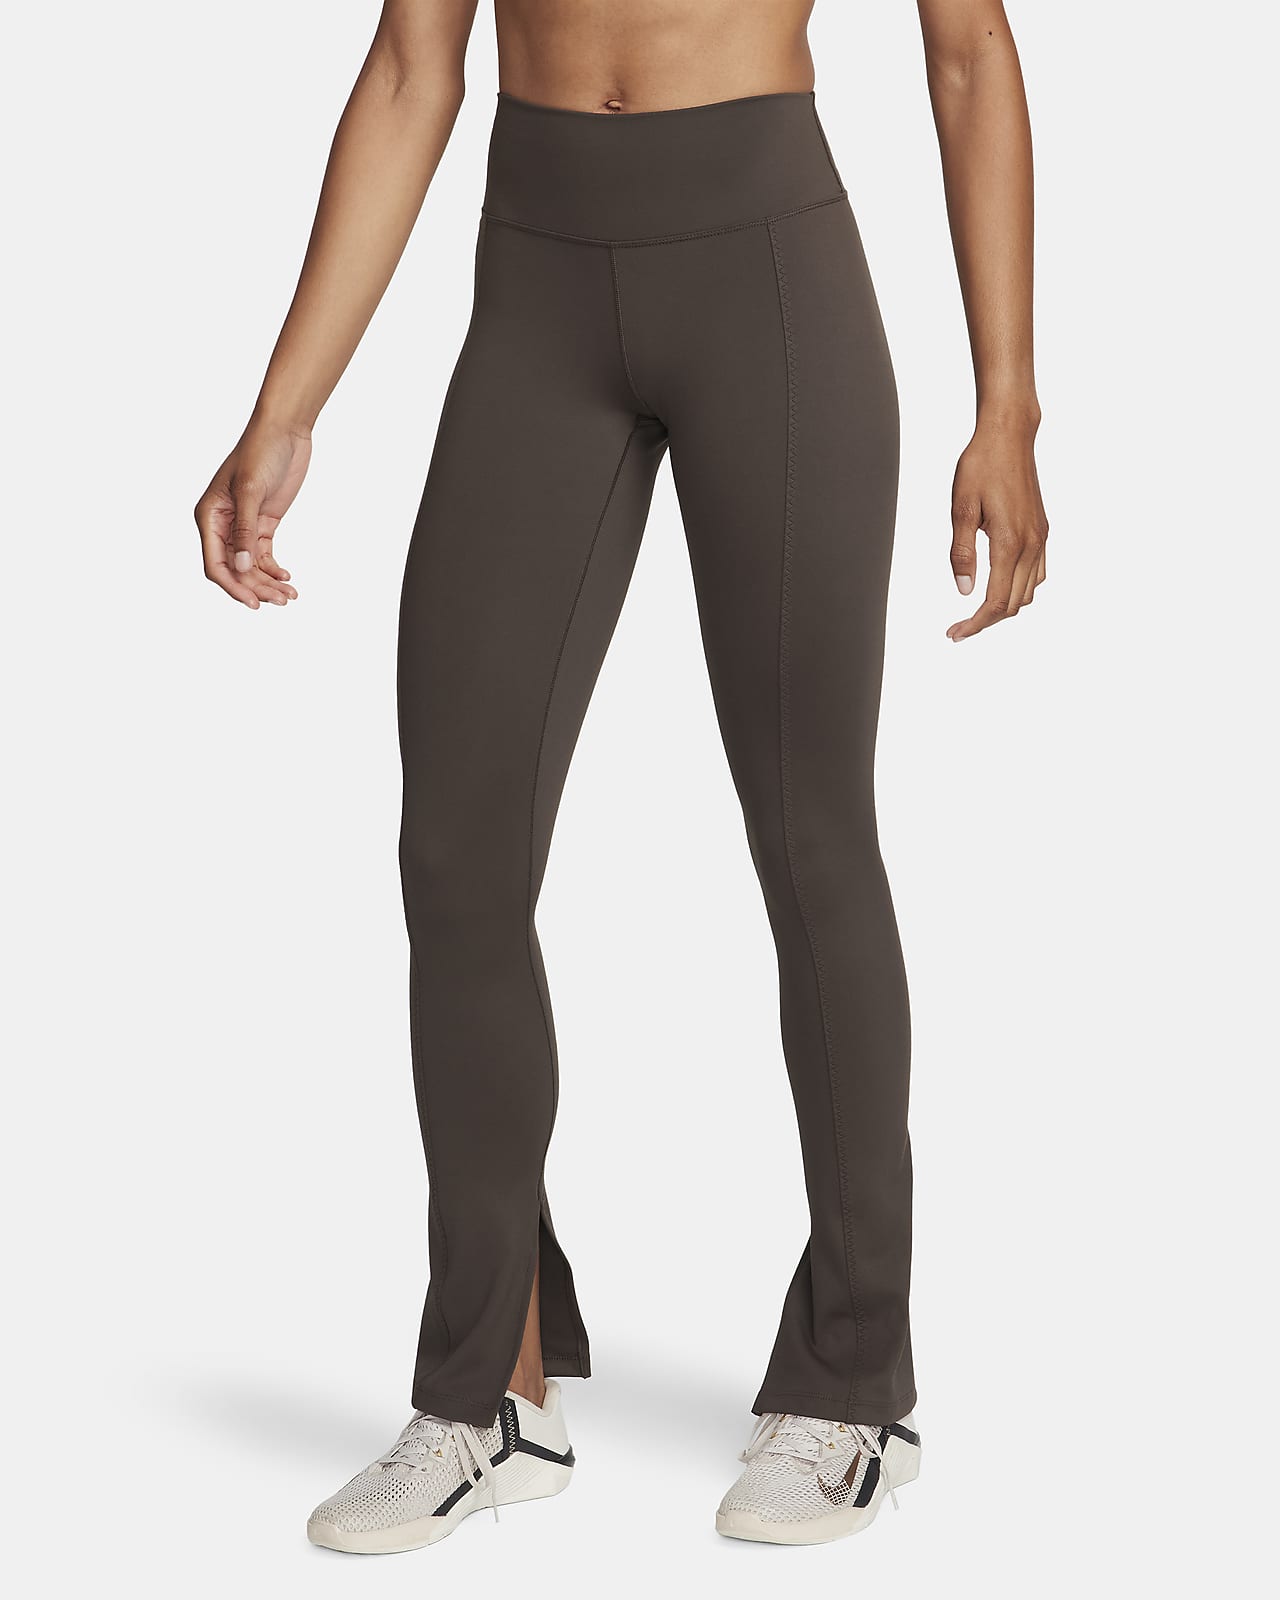 Nike One Leggings de talle alto y longitud completa con dobladillo dividido - Mujer